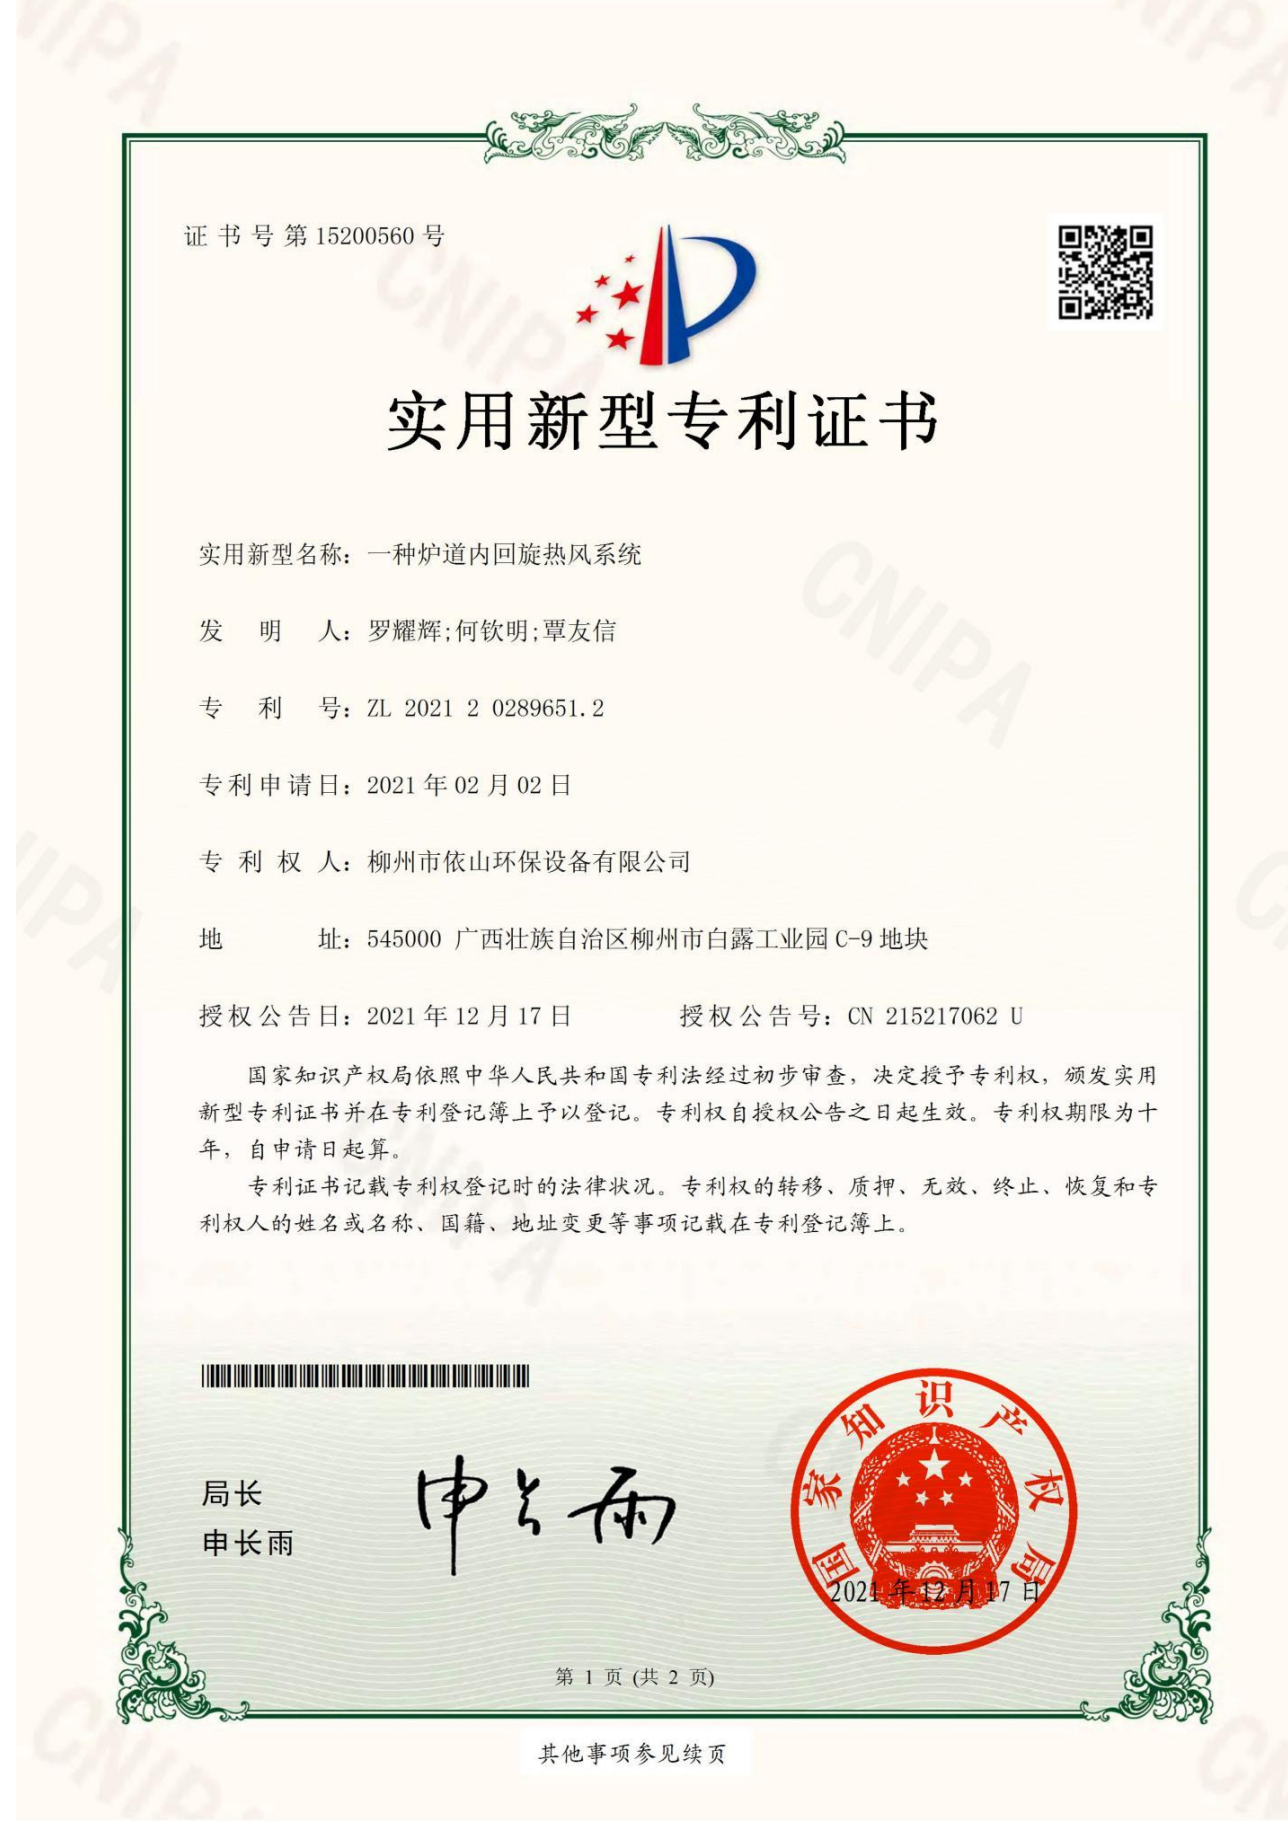 柳州市依山环保设备有限公司资质文件_18.jpg